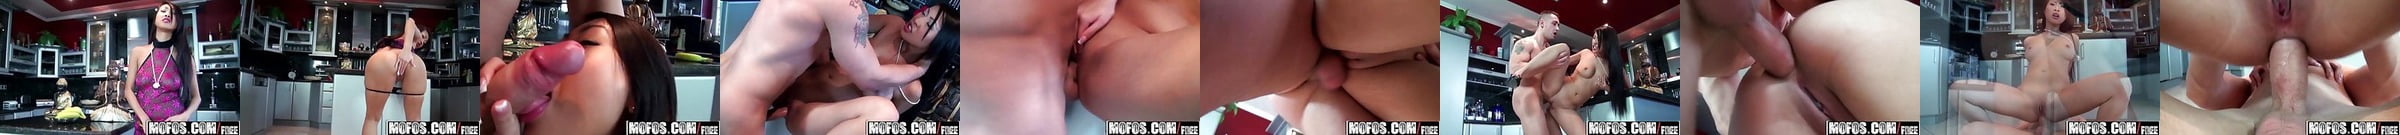 Charles Dera Dominates Jade Kush Big Boobs Brazzers